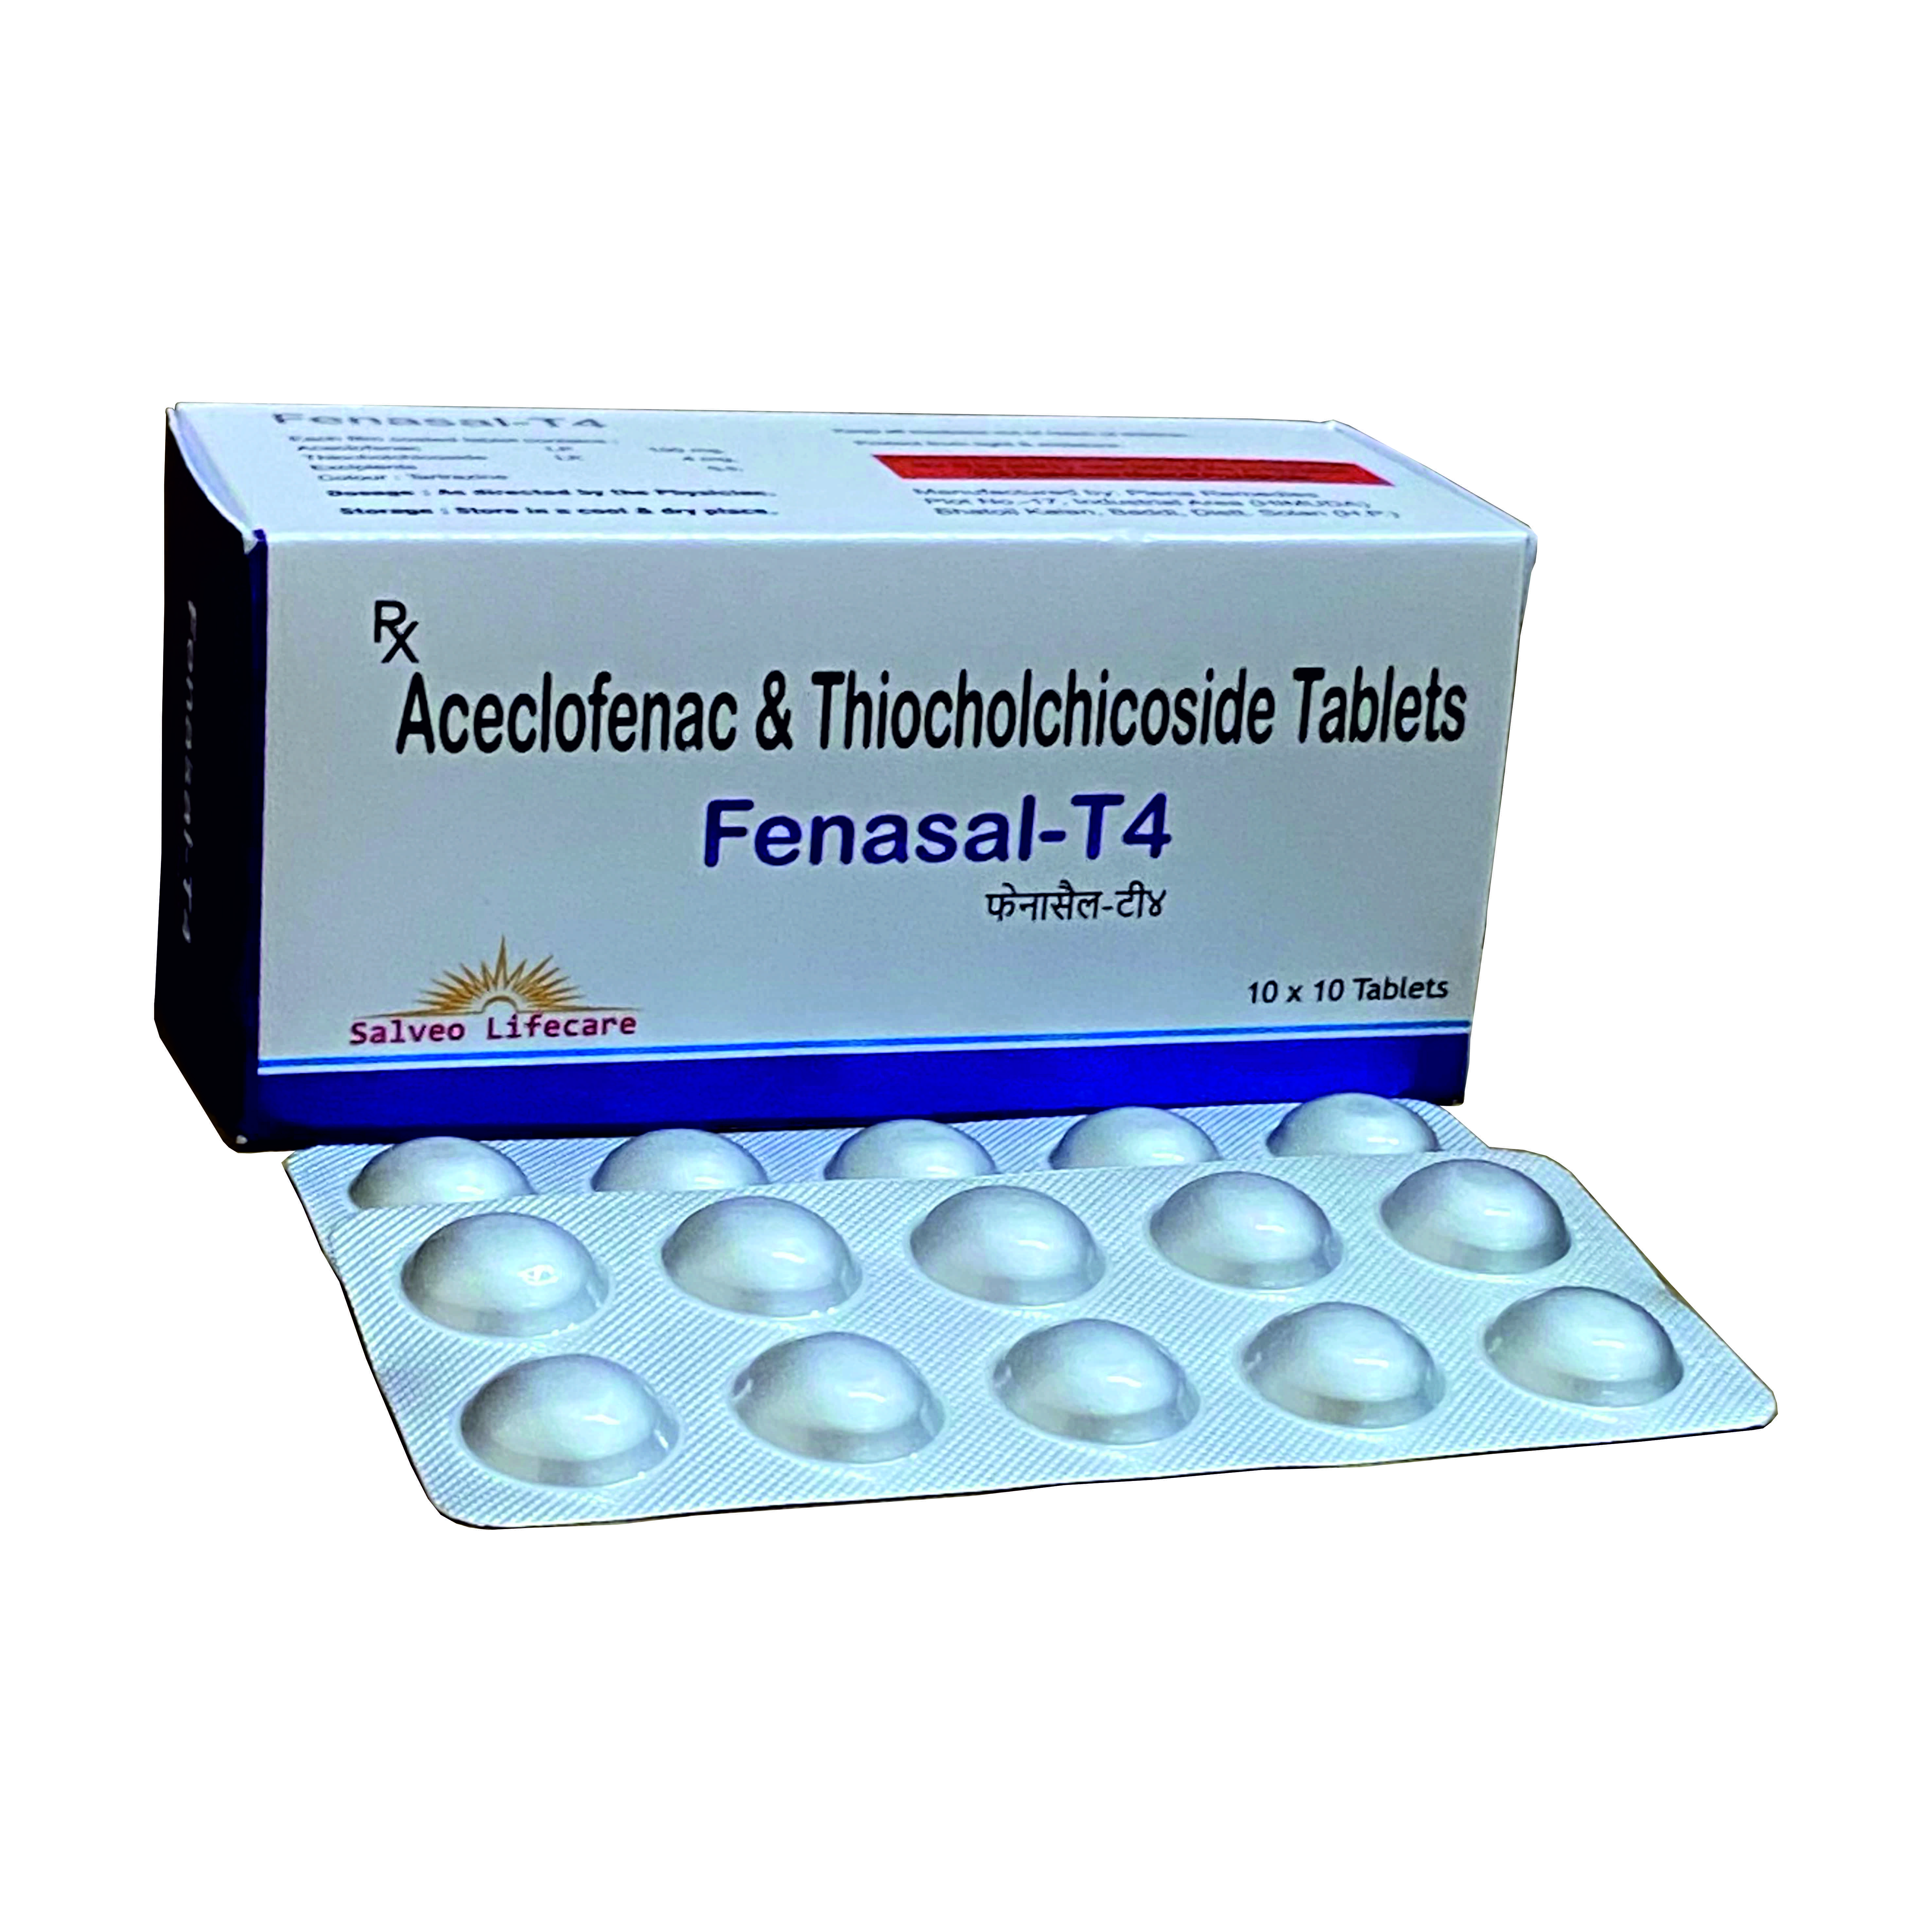 aceclofenac 100 mg, thiocholchicoside 4 mg